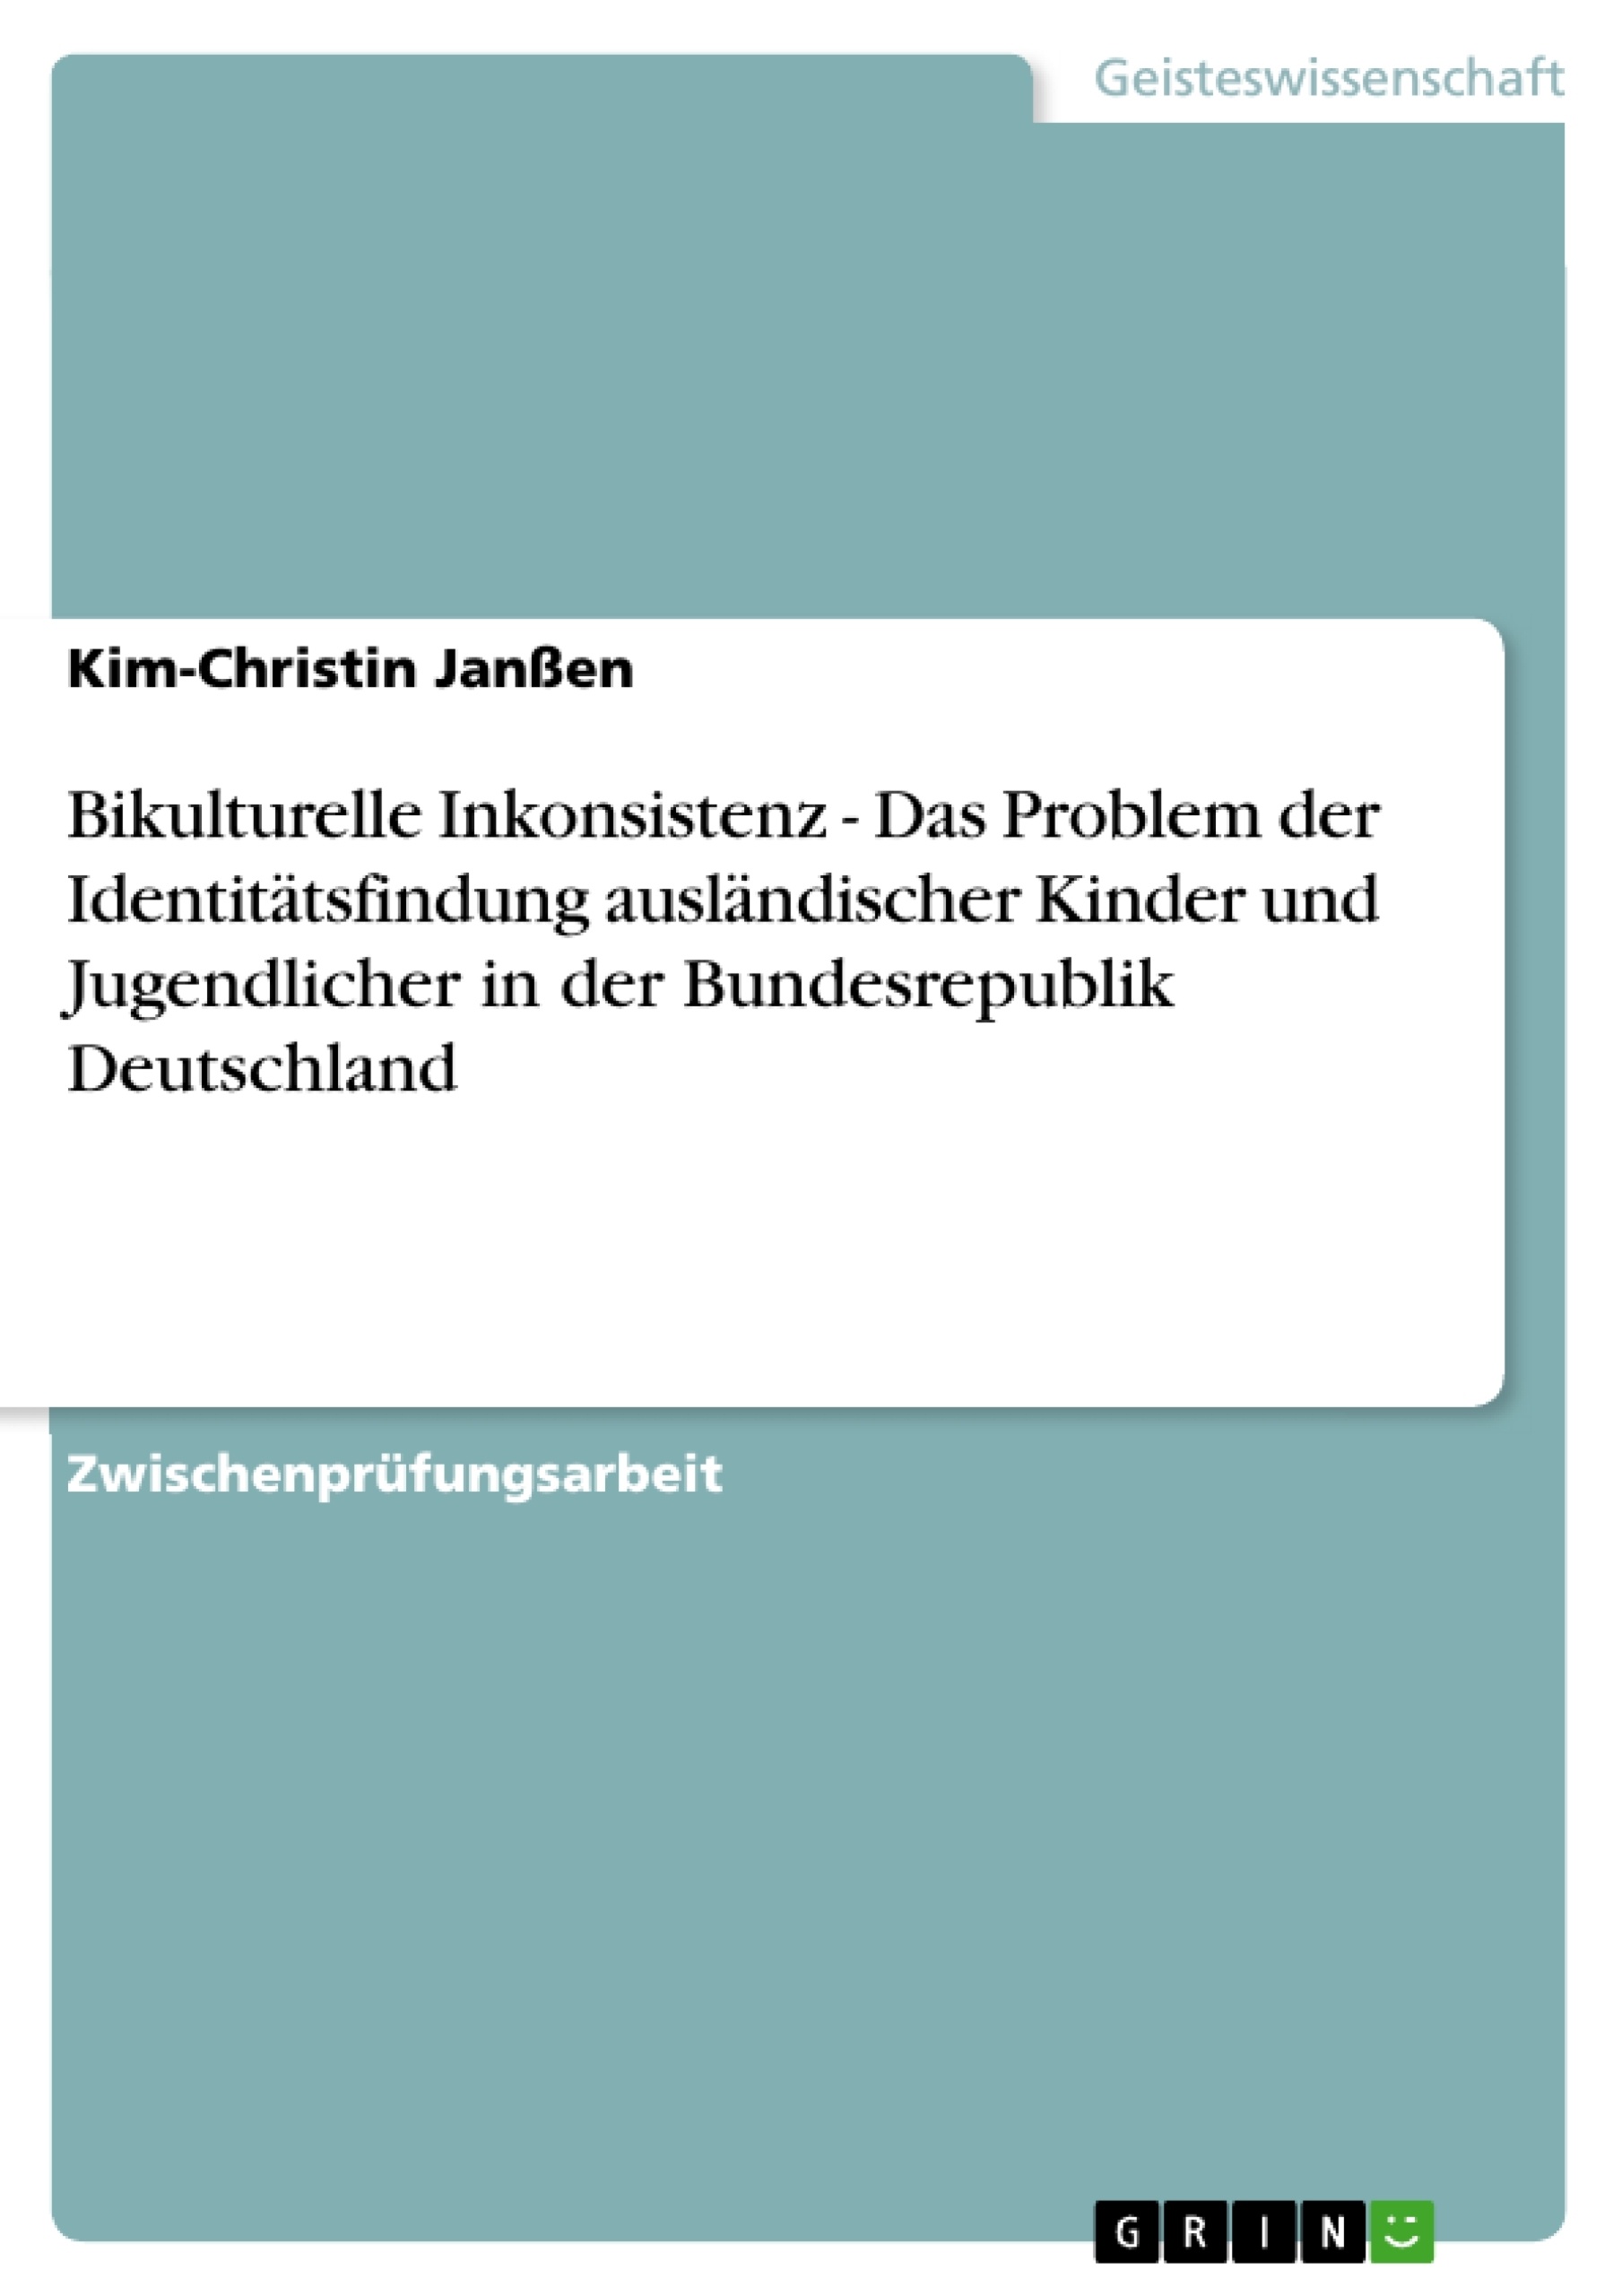 Título: Bikulturelle Inkonsistenz - Das Problem der Identitätsfindung ausländischer Kinder und Jugendlicher in der Bundesrepublik Deutschland